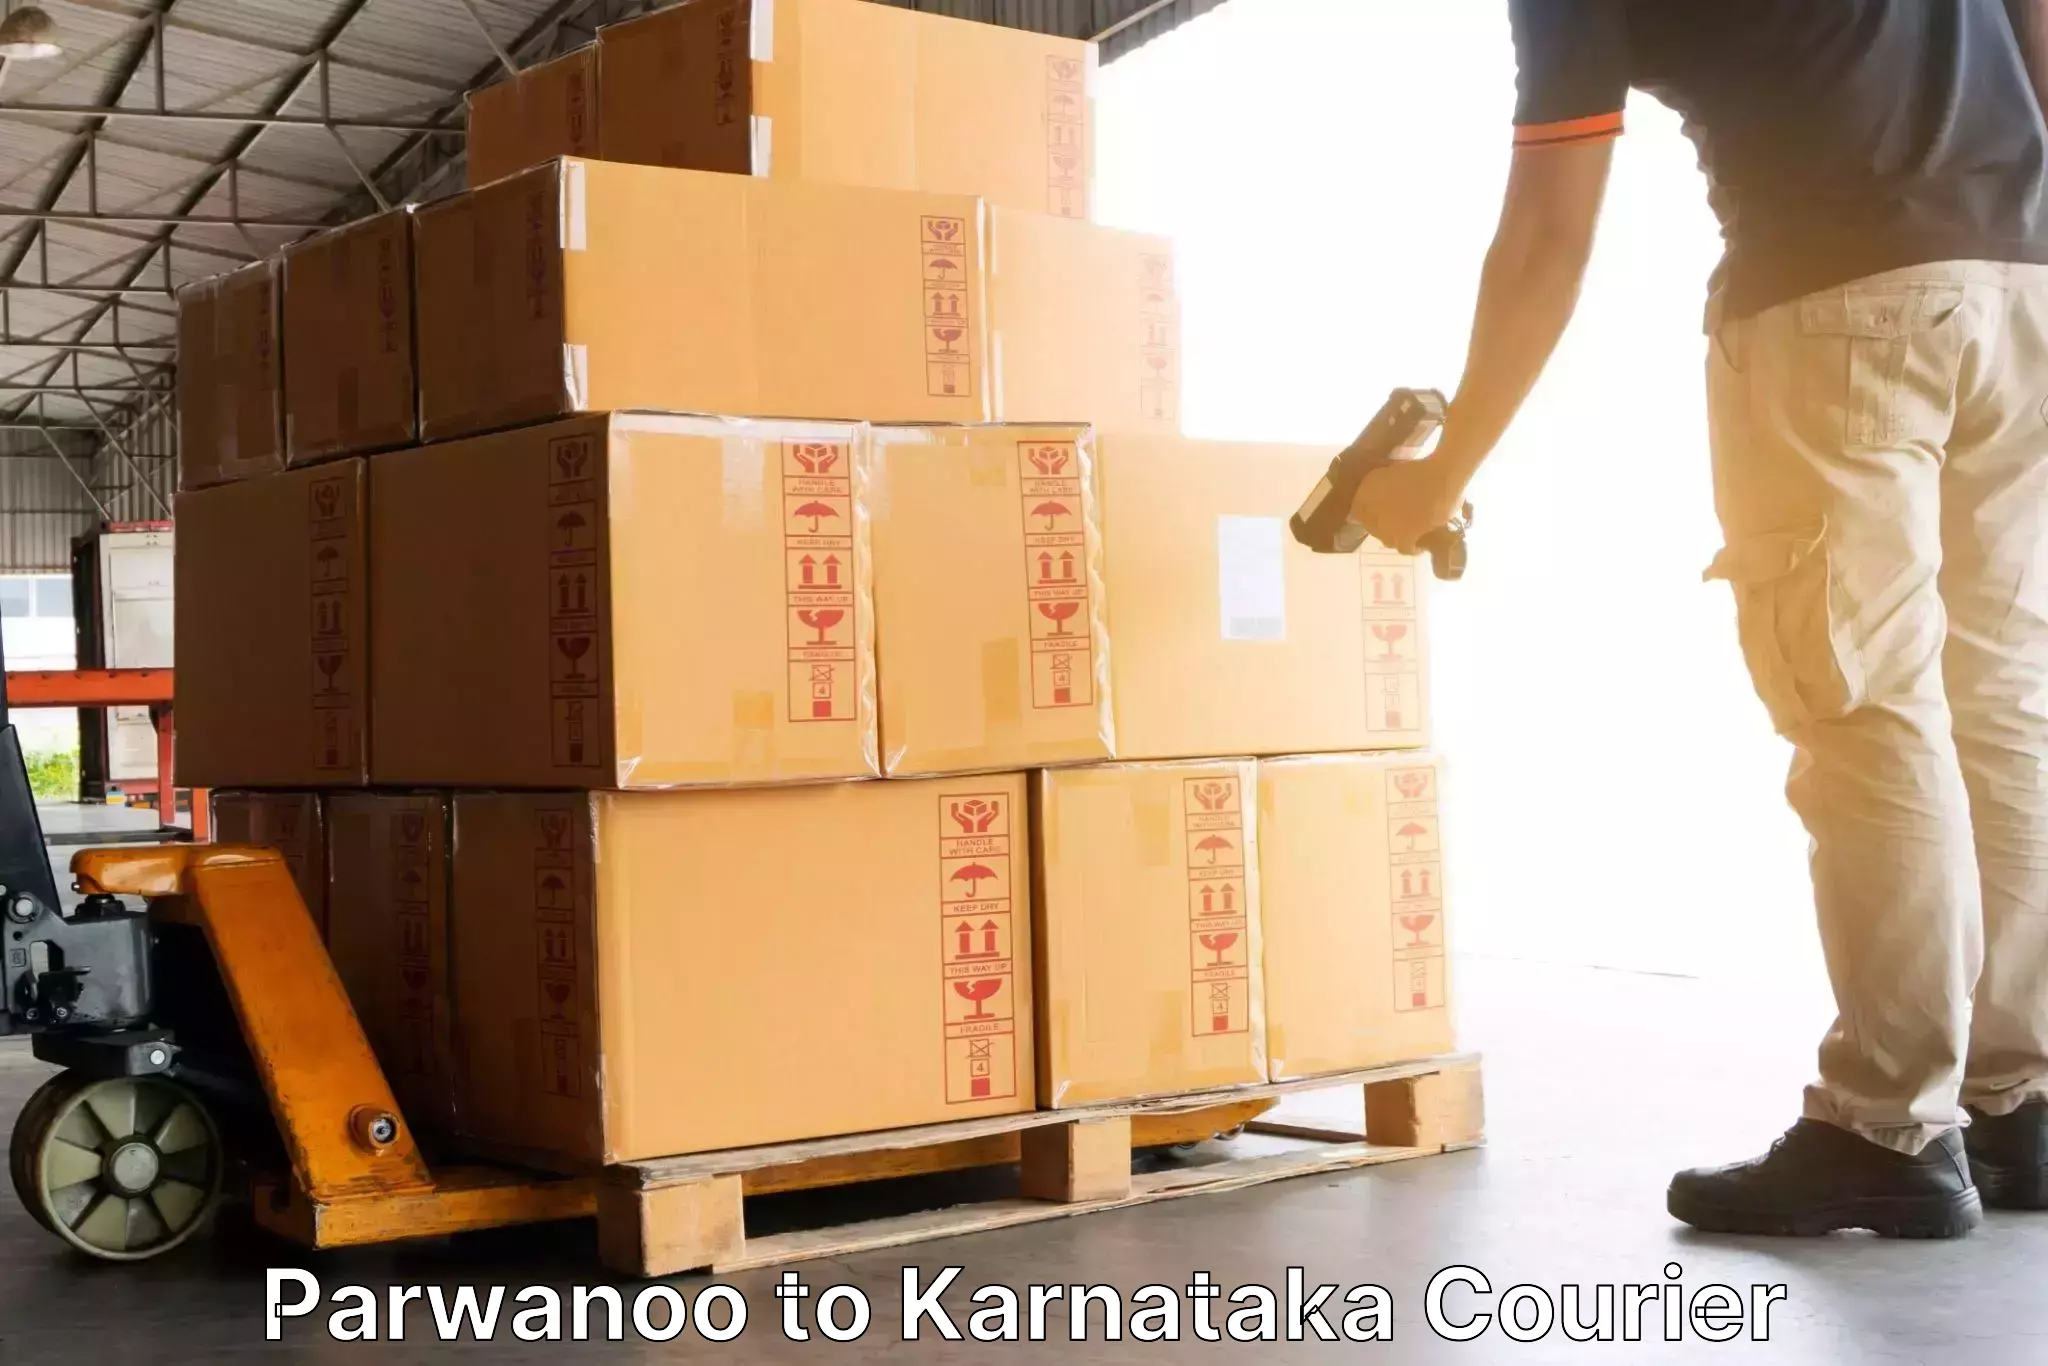 Express delivery capabilities Parwanoo to Nanjangud